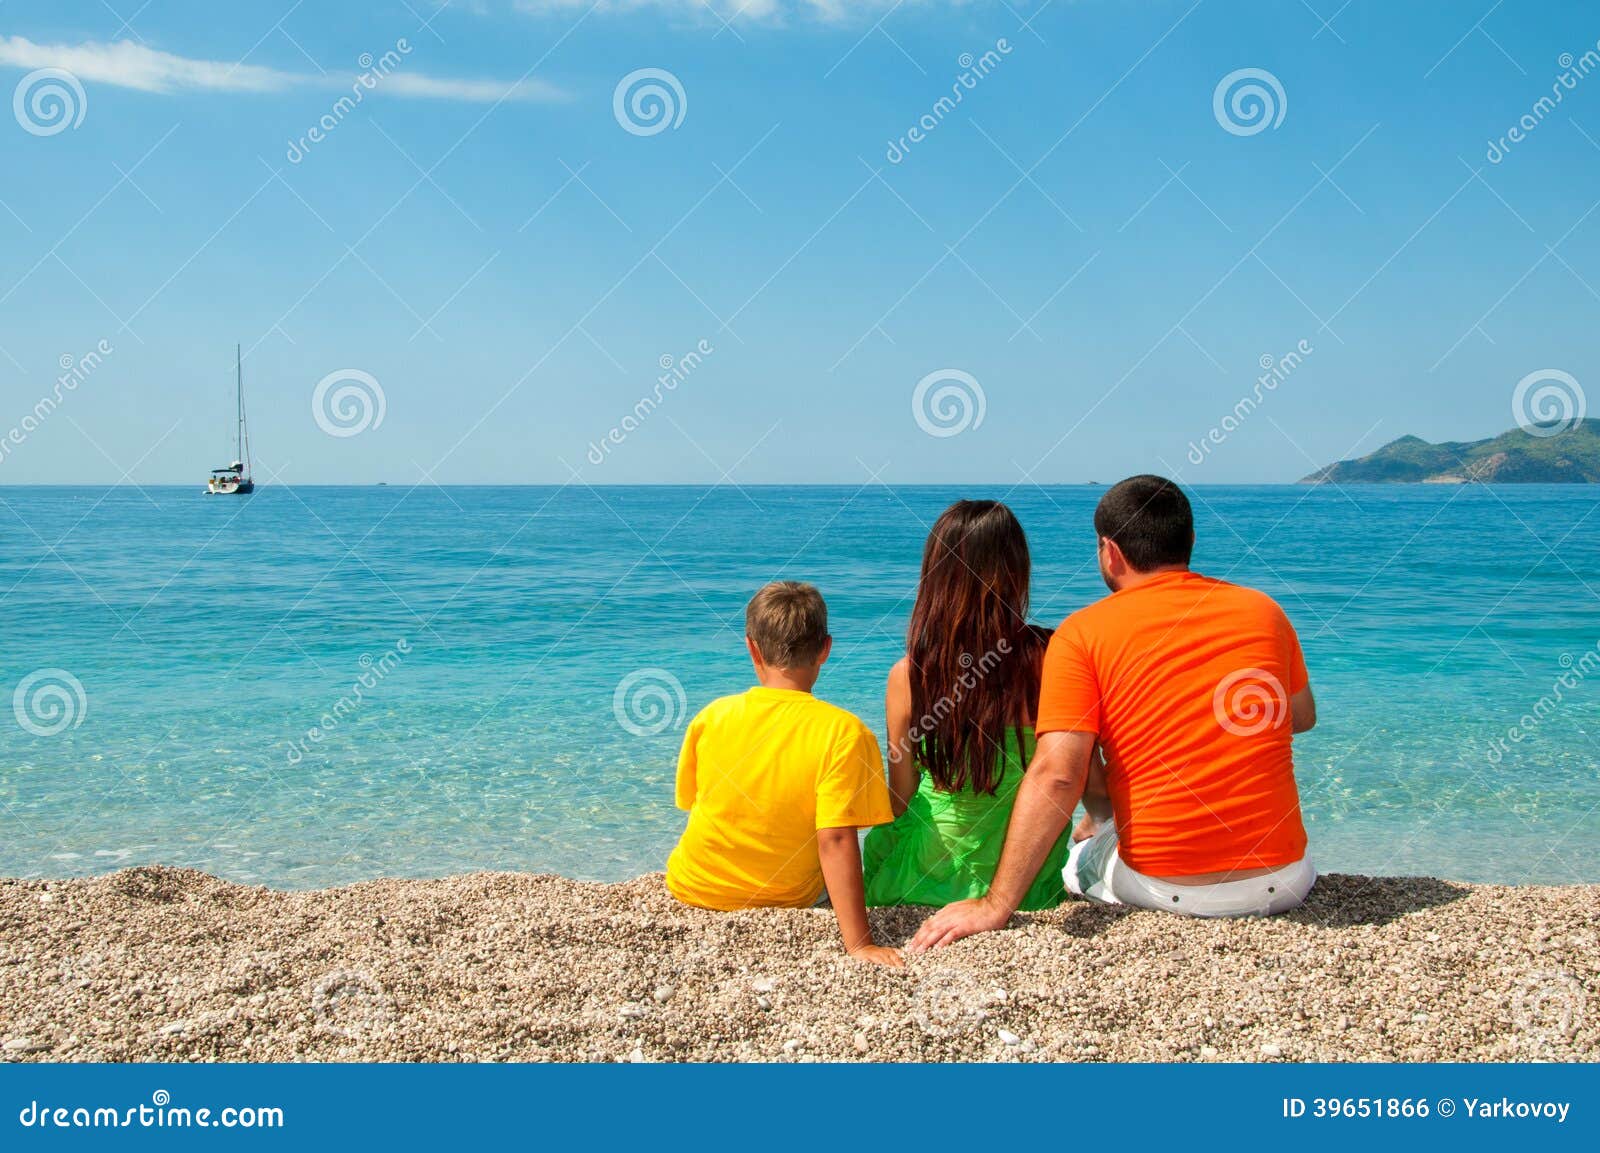 Фото мама и сын на пляже